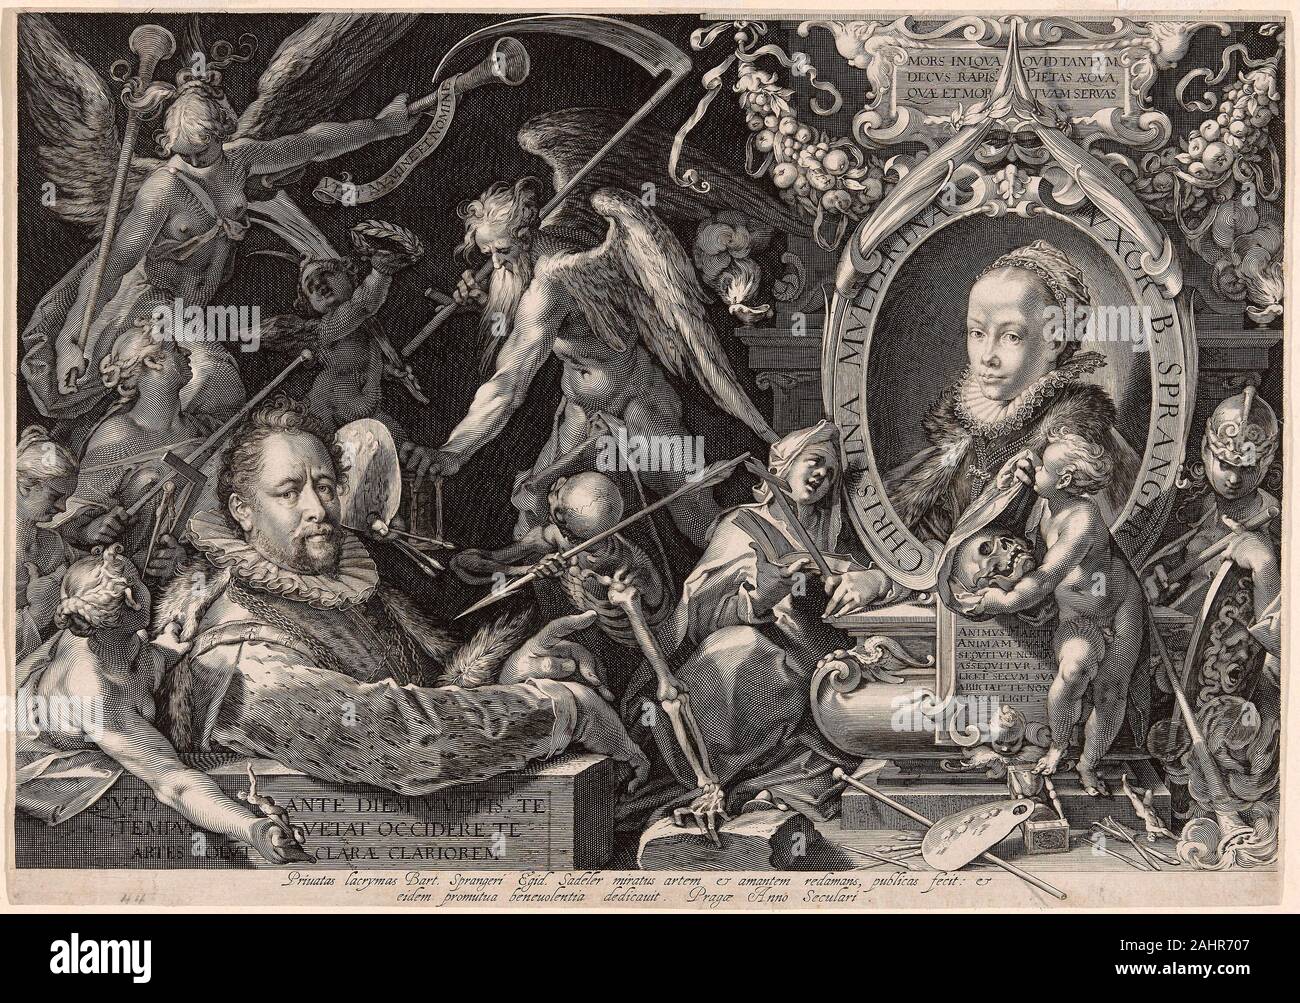 Aegidius Sadeler, II. Portrait von Bartolomaeus Spranger mit einer Allegorie des Todes seiner Frau Christina Müller. 1600. Holland. Gravur mit Gravur in Schwarz auf Elfenbein Bütten Aegidius Sadeler zu einem der großen niederländischen Dynastien der reproduktiven Druckgraphiker gehörte. Sadeler ging nach Prag in über 1597 und arbeitete am Hof von Kaiser Rudolph II. Er war so bewundert für sein Porträt Gravur, dass er das Phoenix der Gravur aufgerufen wurde. In diesem komplexen Kombination der Porträtmalerei und Allegorie, zahlte er Hommage an eine moderne manieristischen Künstler, Bartholomaeus Spranger. In deferenc Stockfoto